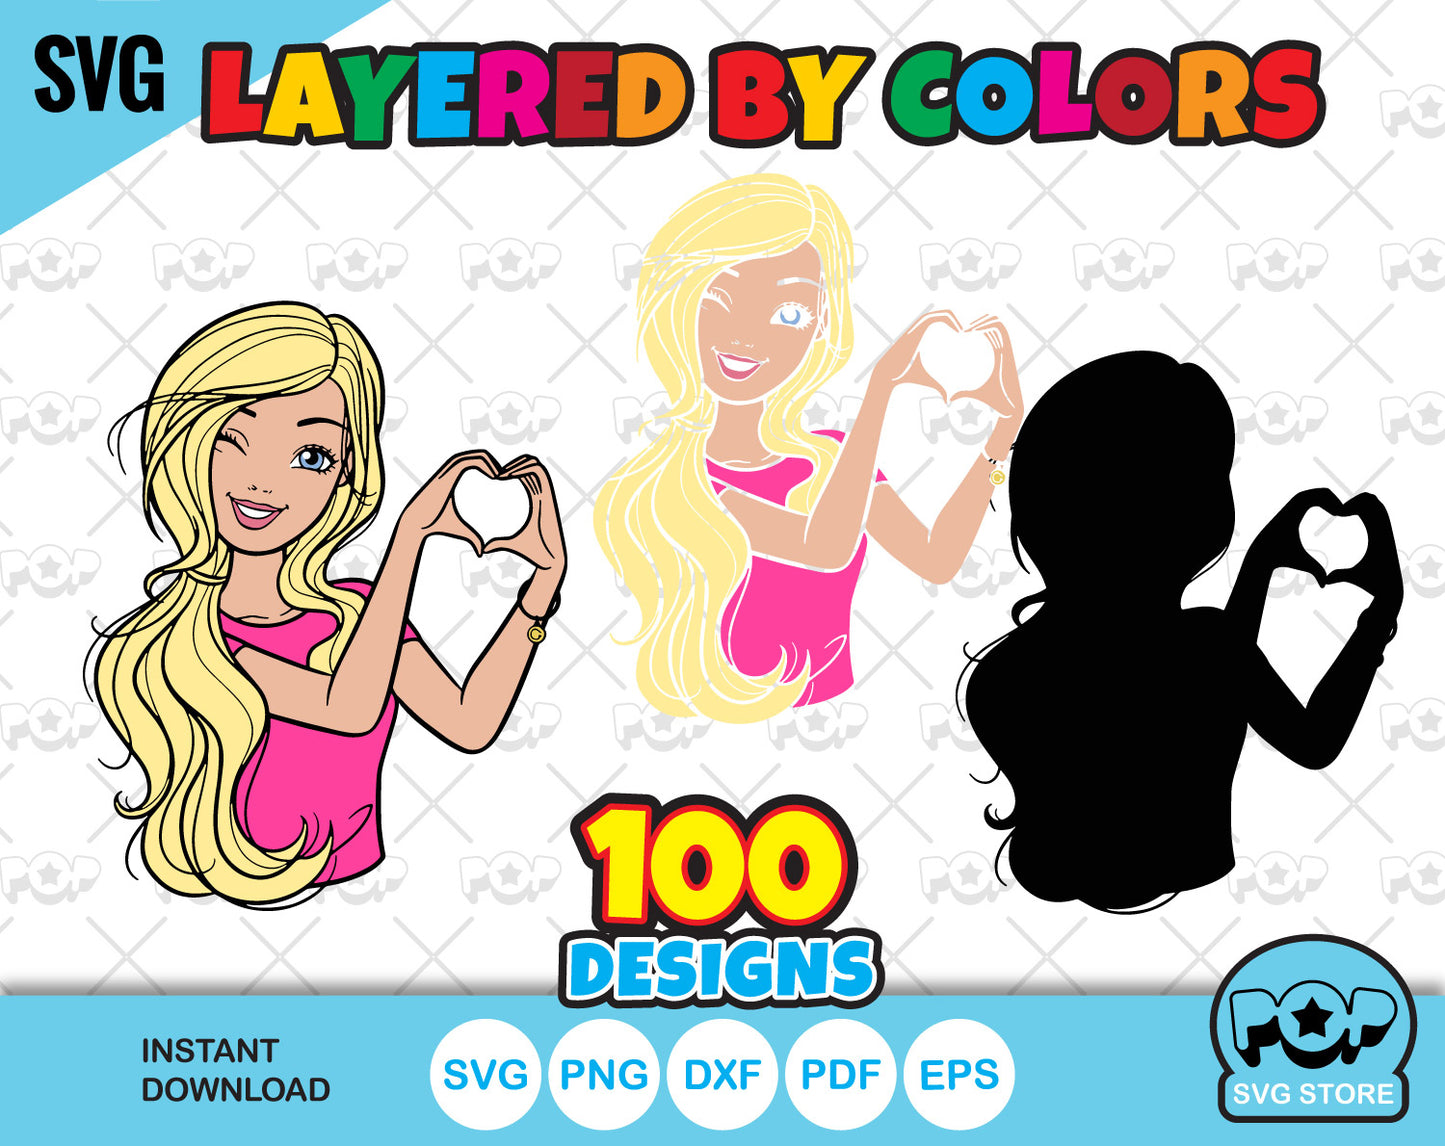 Barbie 100 cliparts bundle + alphabet, Barbie svg cut files for Cricut / Silhouette, Barbie png, dxf, instant download